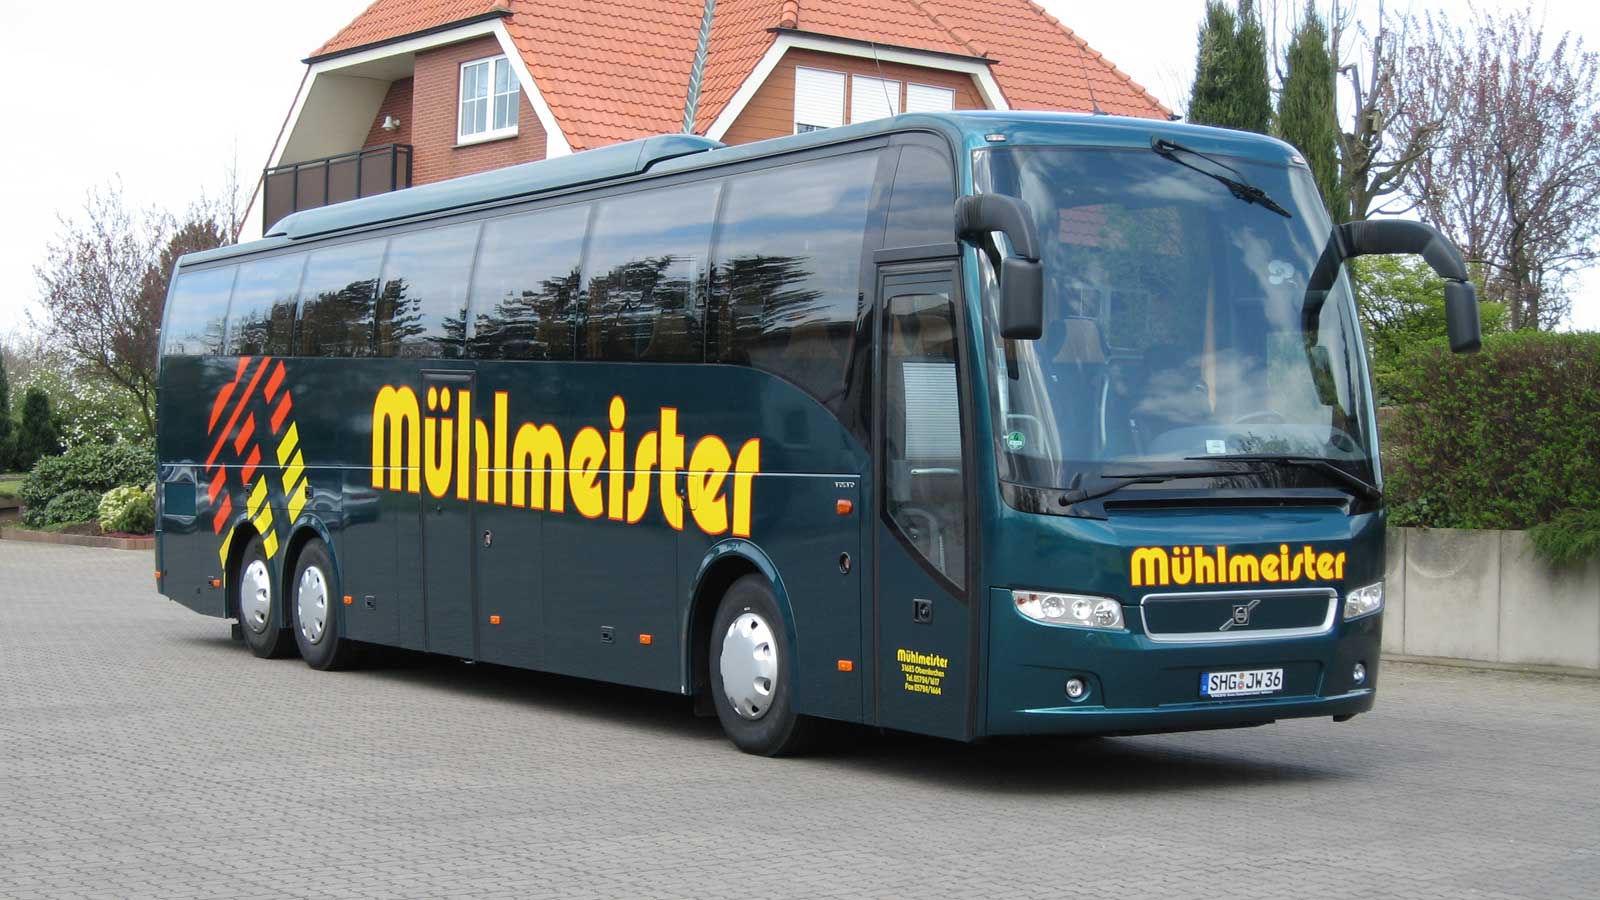 Mühlmeister, 31683 Obernkirchen | Omnibusbetrieb, Reiseveranstalter und Busvermietung | Kompetenz seit über 60 Jahren